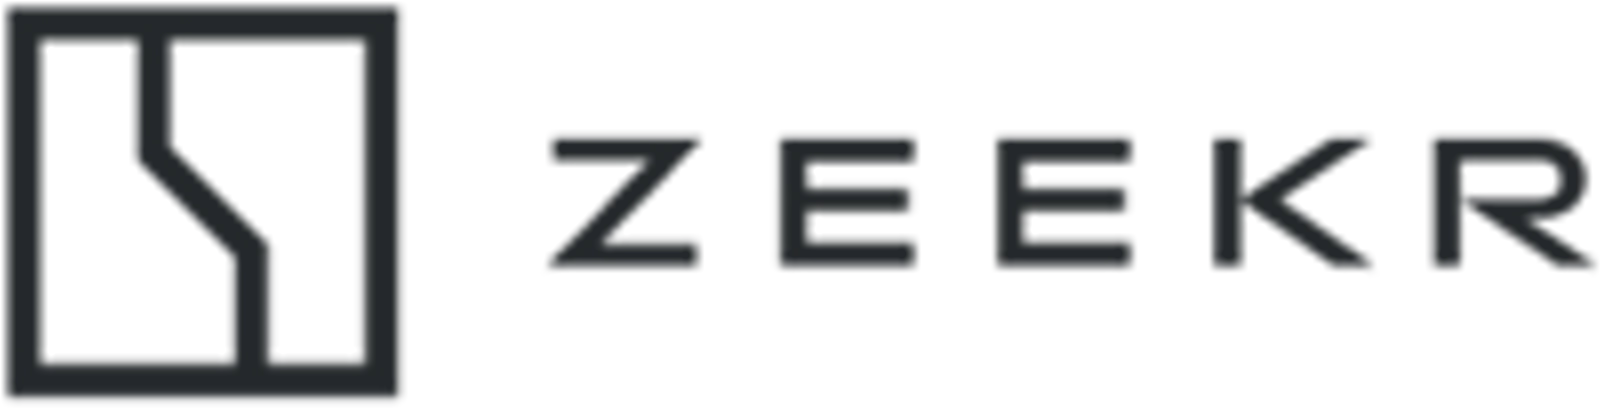 логотип ZEEKR